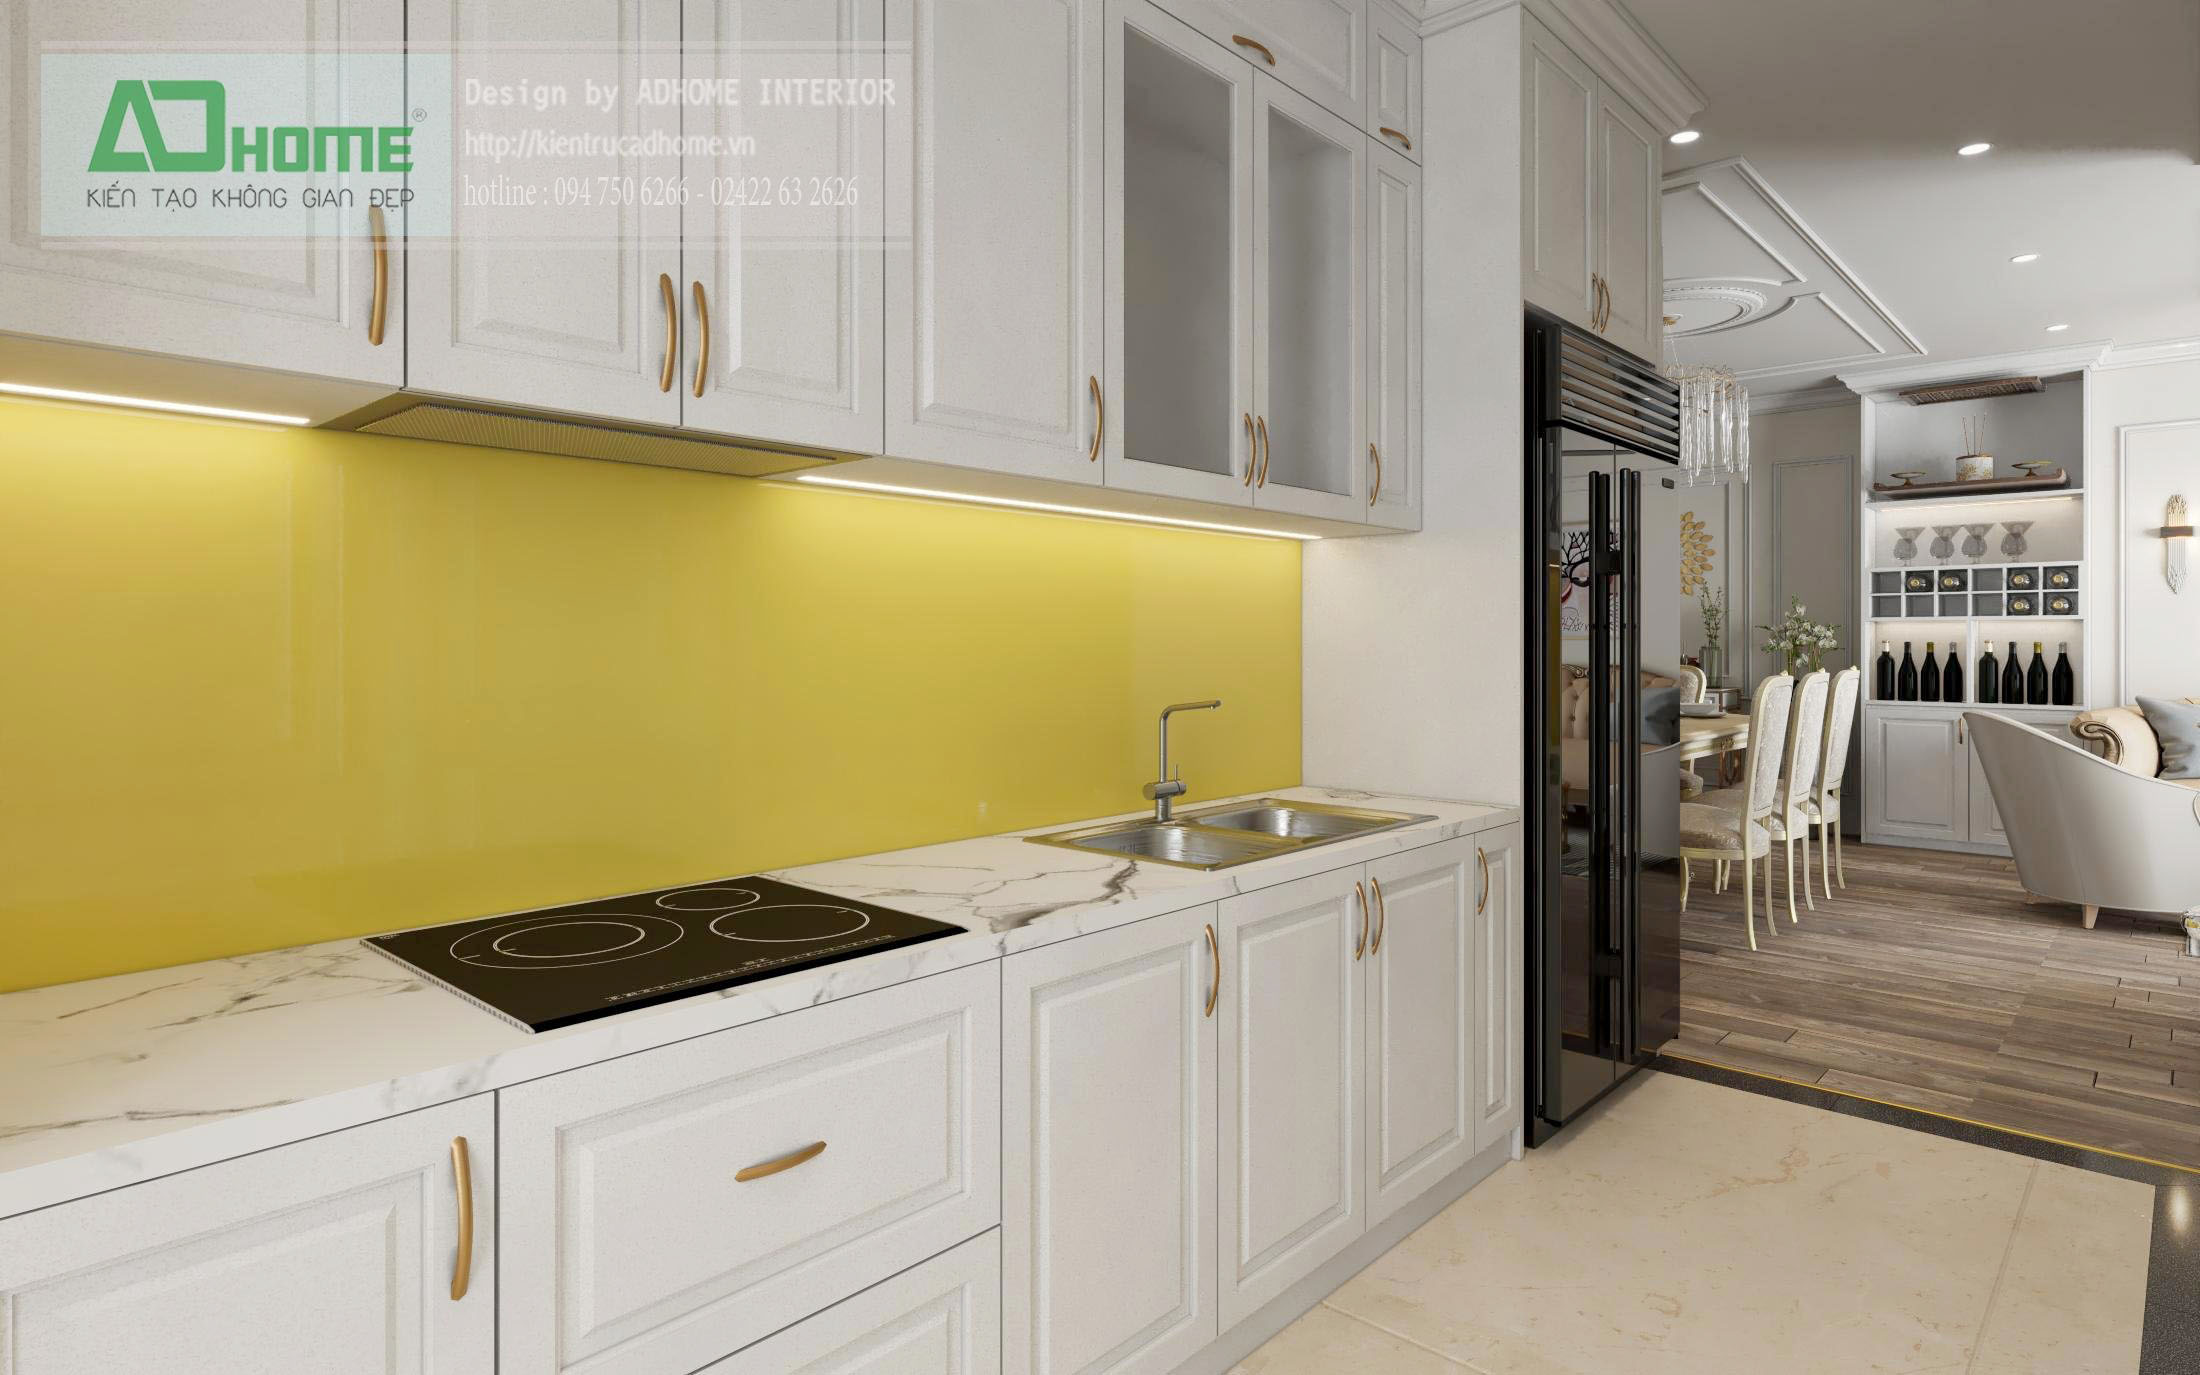  Thiết kế nội thất phòng Bếp căn hộ Tecco Tứ Hiệp - Hiện đại